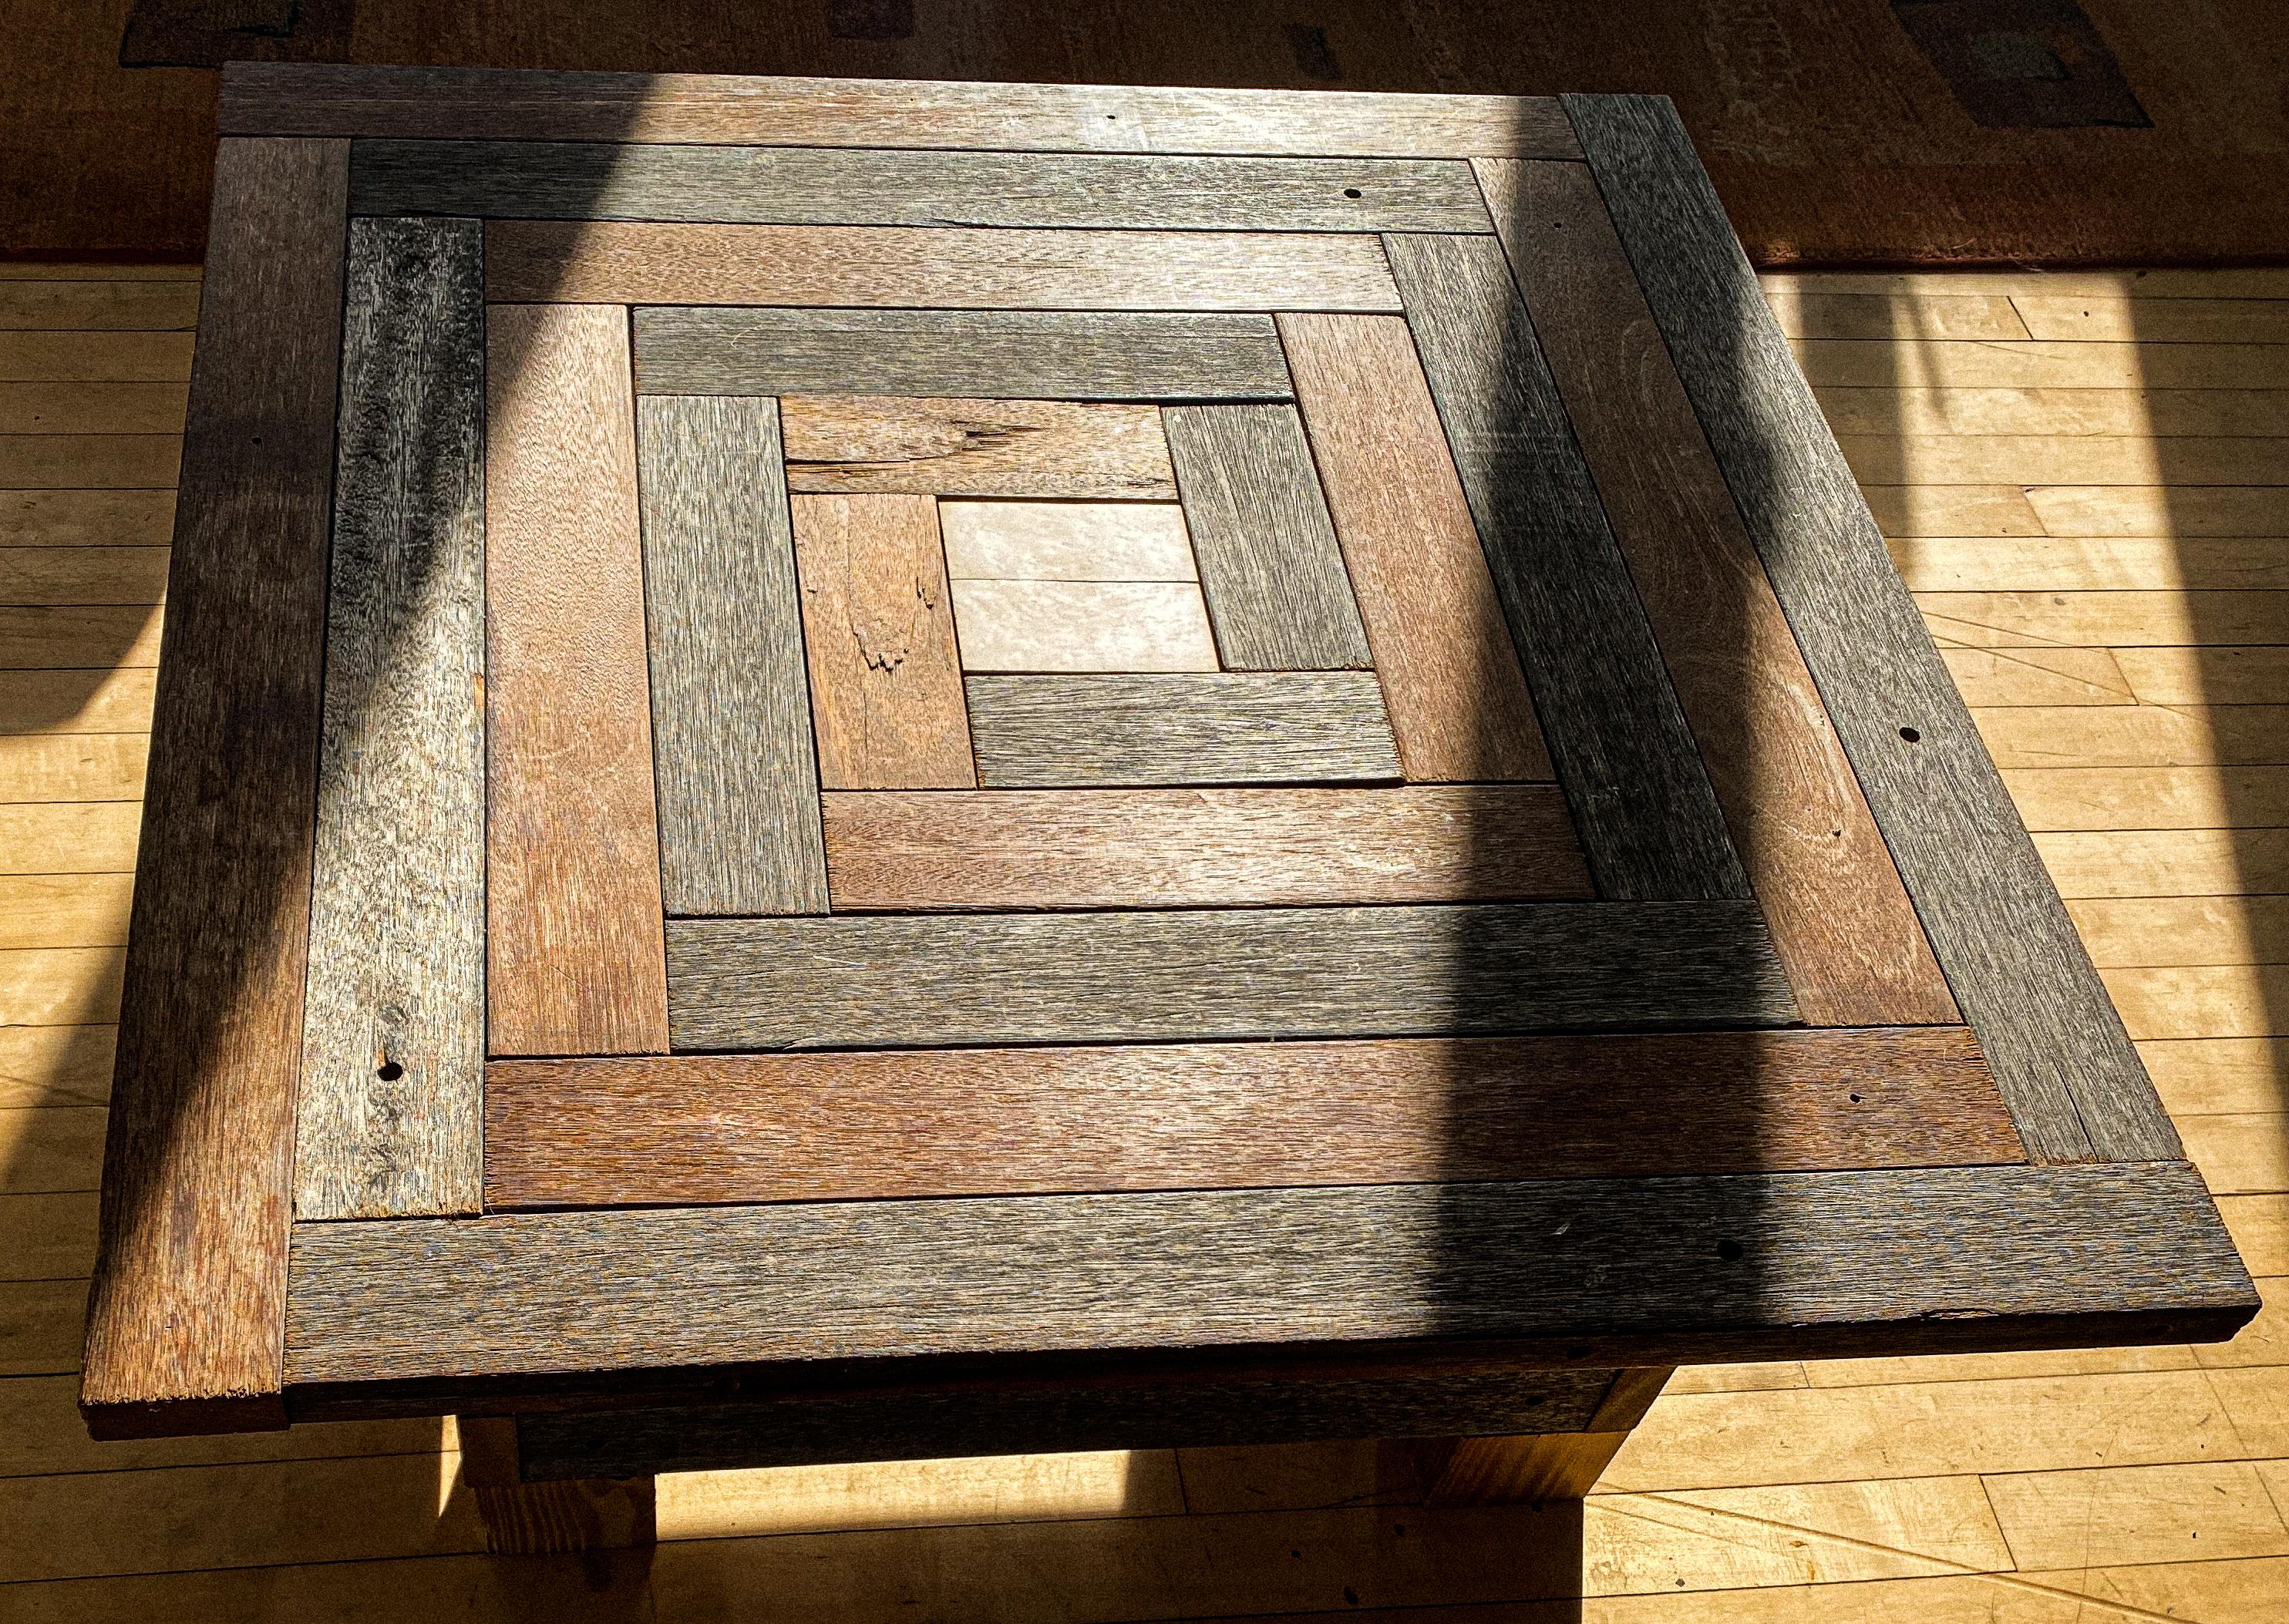 La table puzzle pour le café présente un motif de labyrinthe composé d'un mélange de lamelles de bois dur vieilli et neuf, avec un carré central en érable piqué.
C'est la parfaite table basse rustique Arts & Crafts. Une pièce de conversation dans